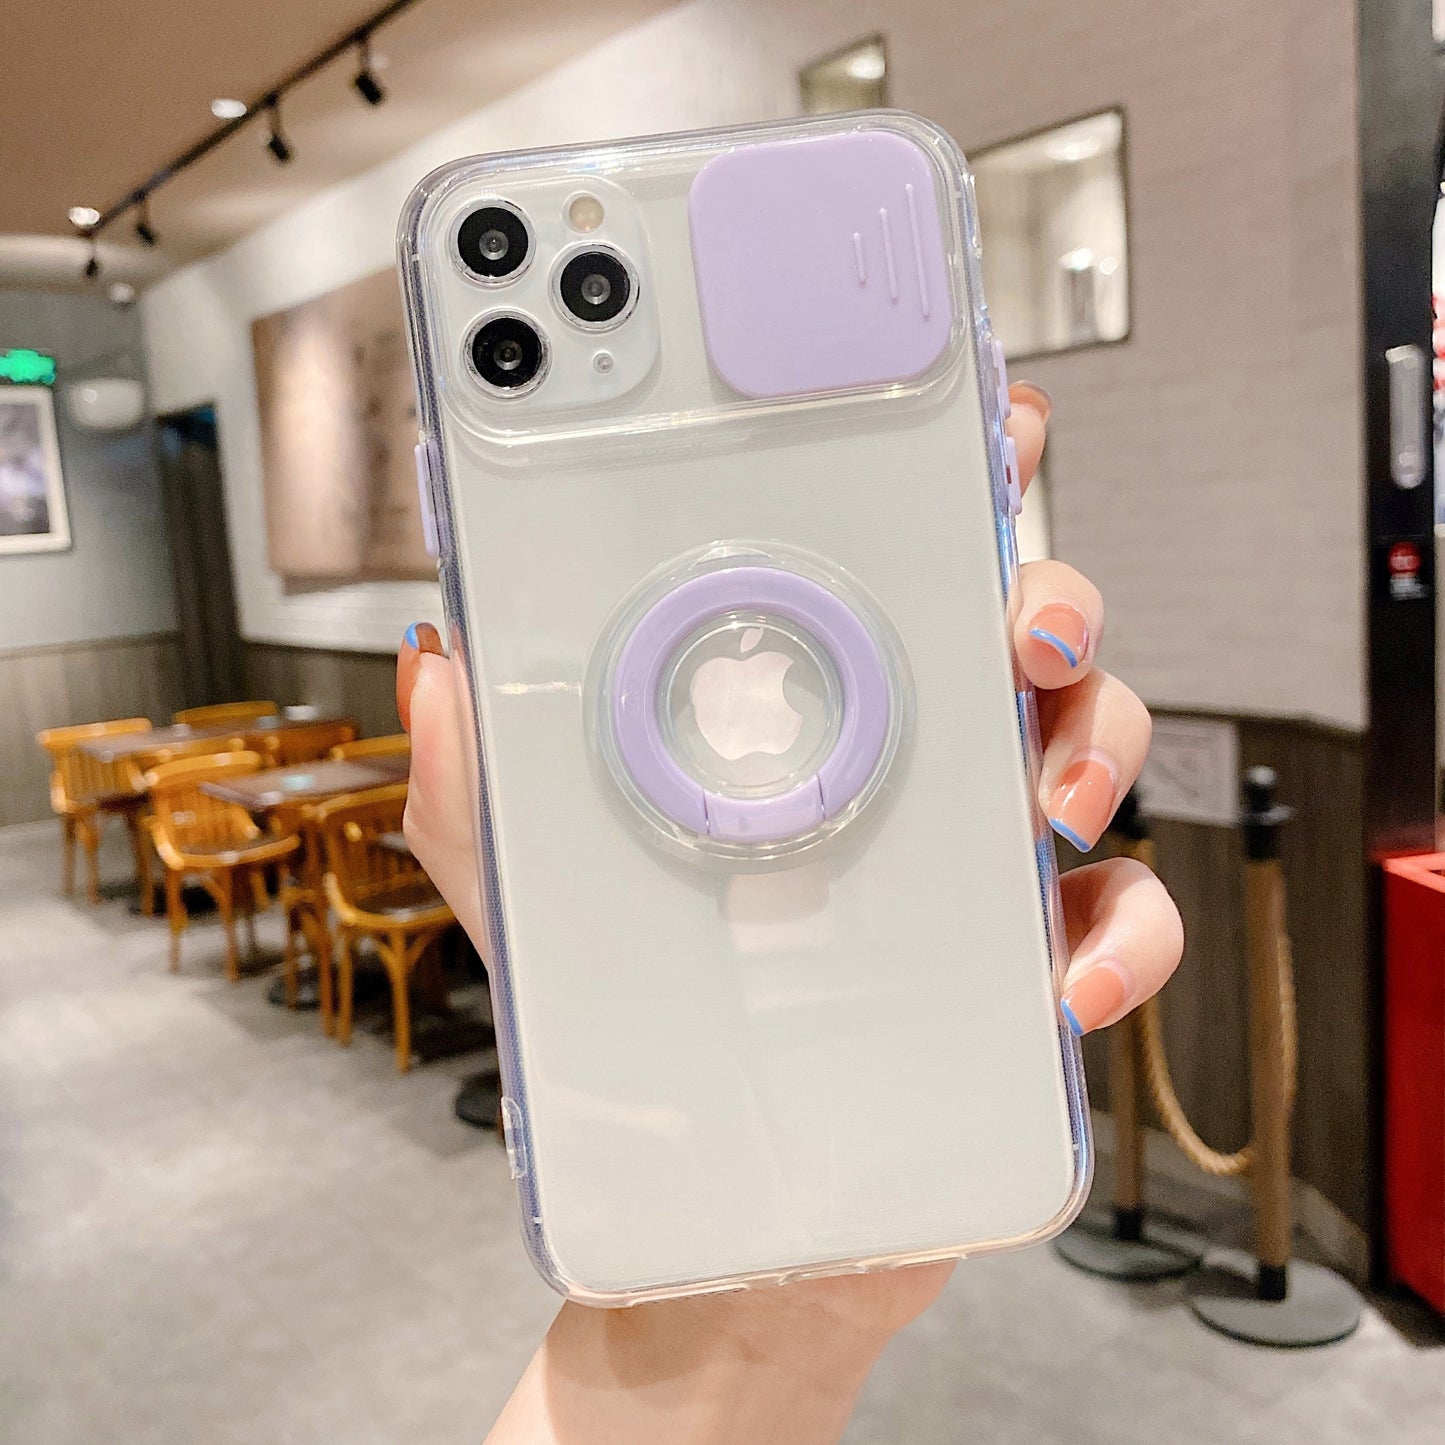 Modische iPhone Hülle mit Kameraabdeckung und Ringhalterung in lila